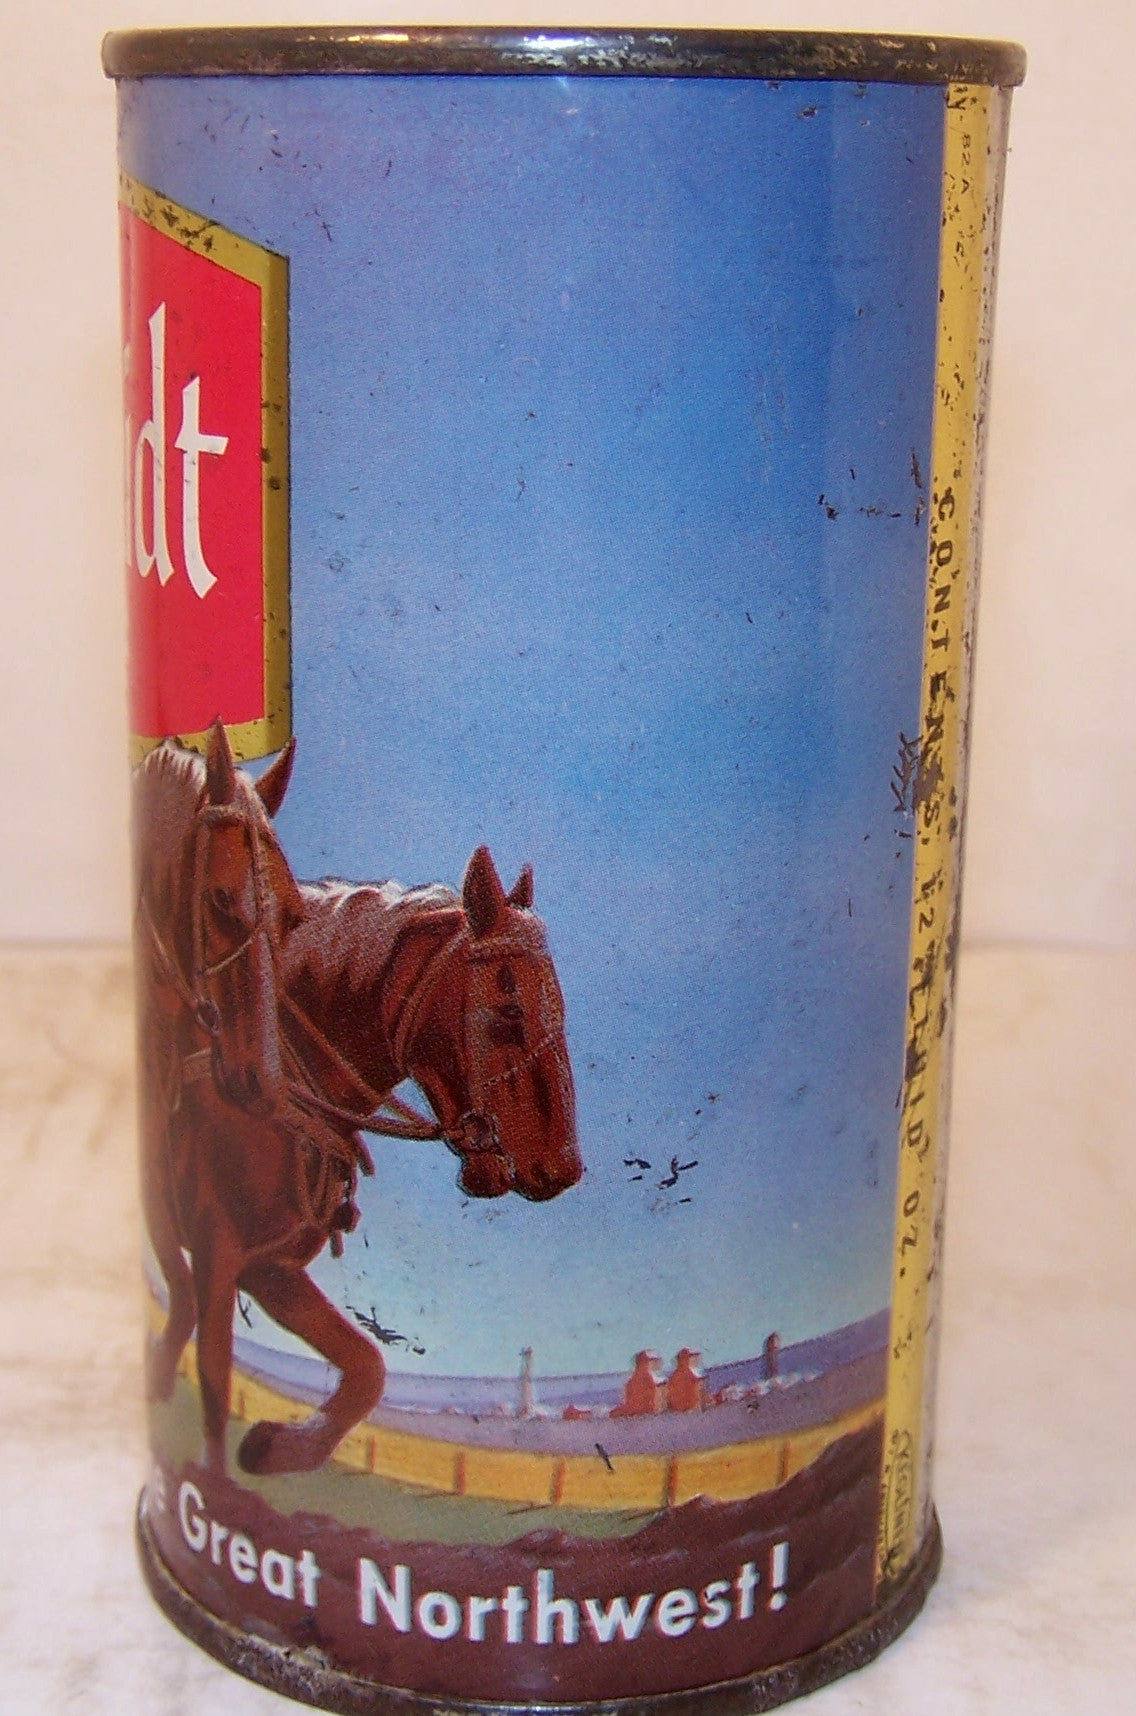 Schmidt Beer (Plow Horses) USBC 130-38, Grade 1- Sold 2/13/16